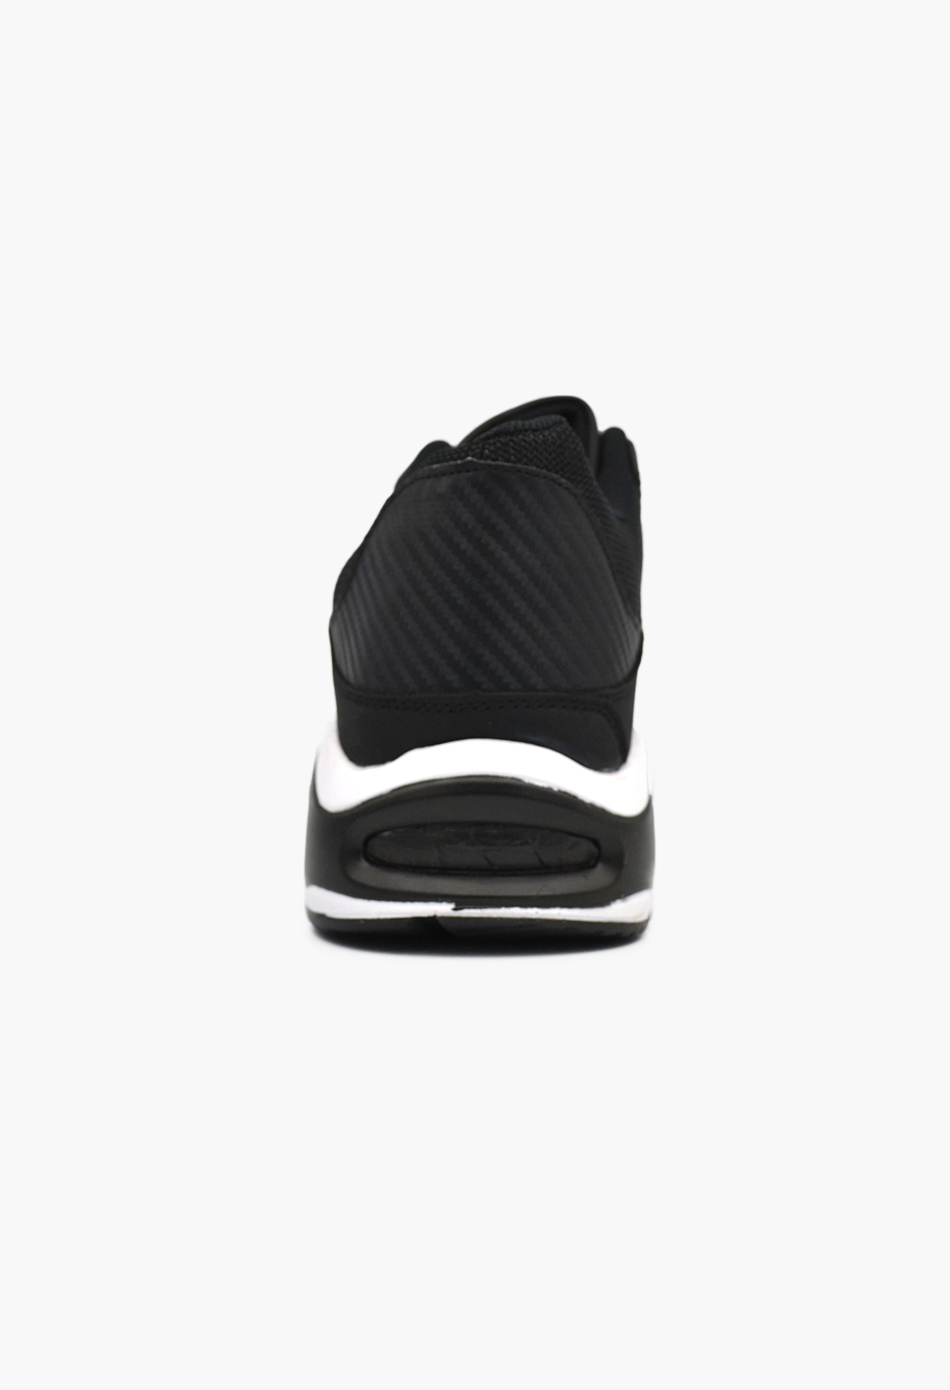 Ανδρικά Αθλητικά Παπούτσια για Τρέξιμο Μαύρο / A1011-black/white ΑΘΛΗΤΙΚΑ & SNEAKERS joya.gr